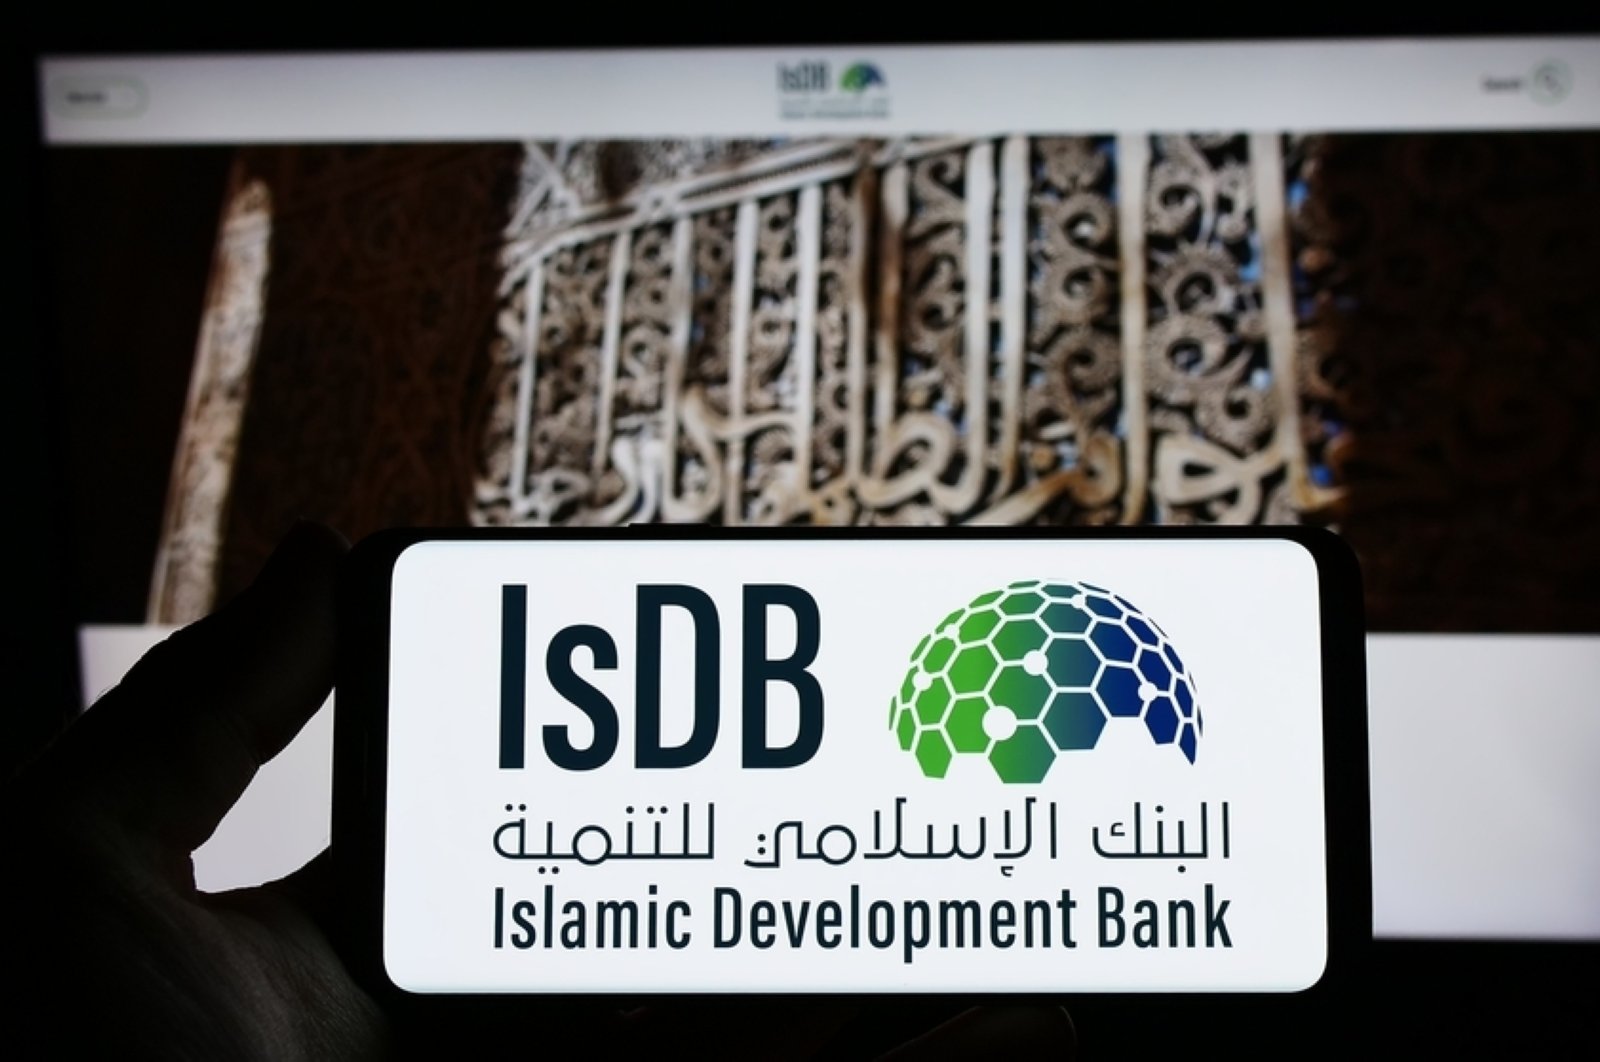 Pertemuan bank syariah melihat penandatanganan perjanjian senilai ,4 miliar